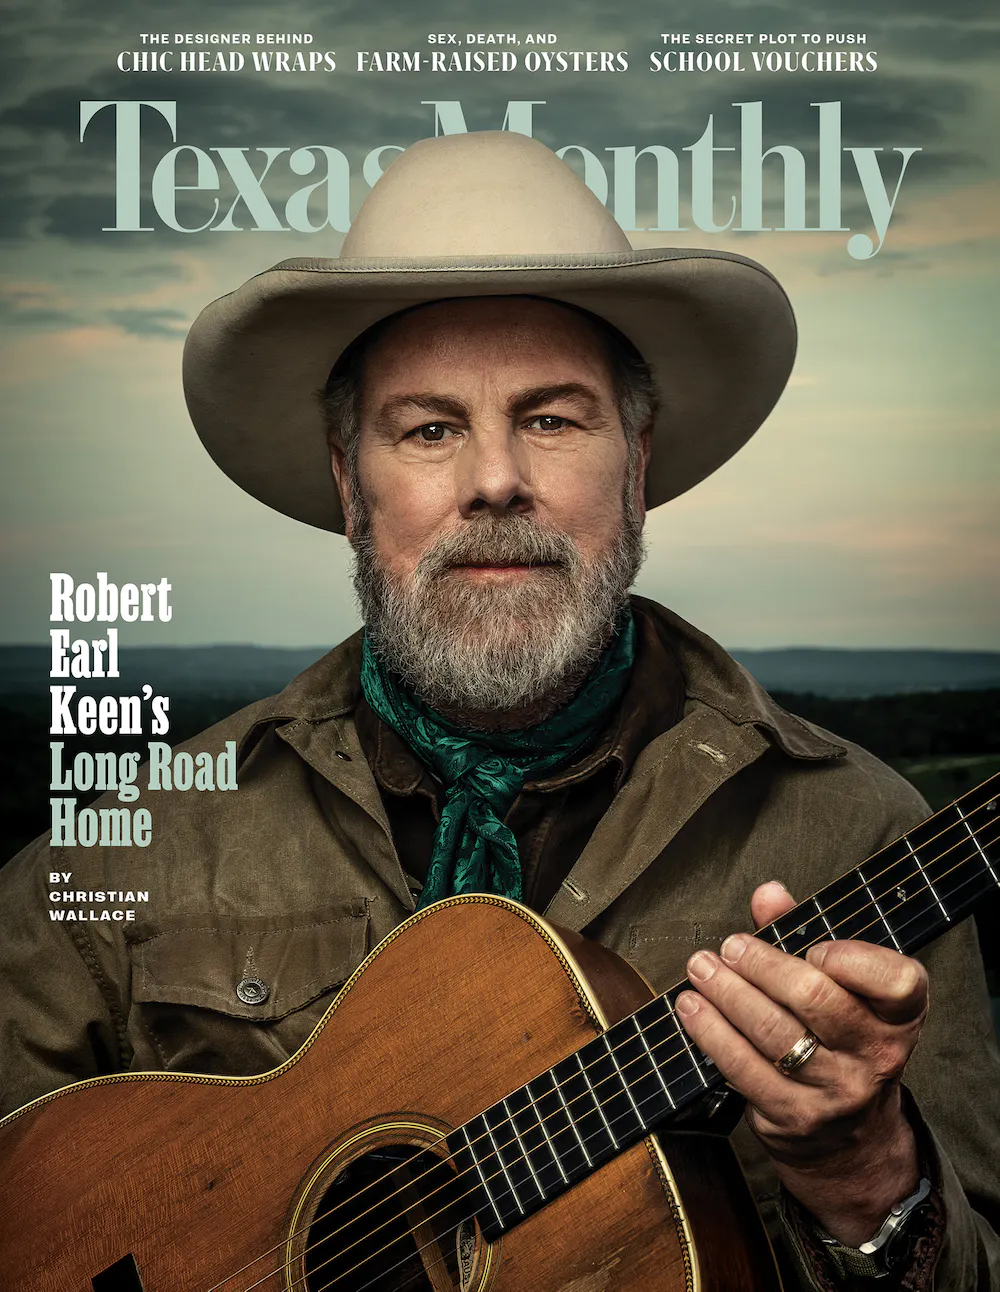 Texas Monthly Magazine